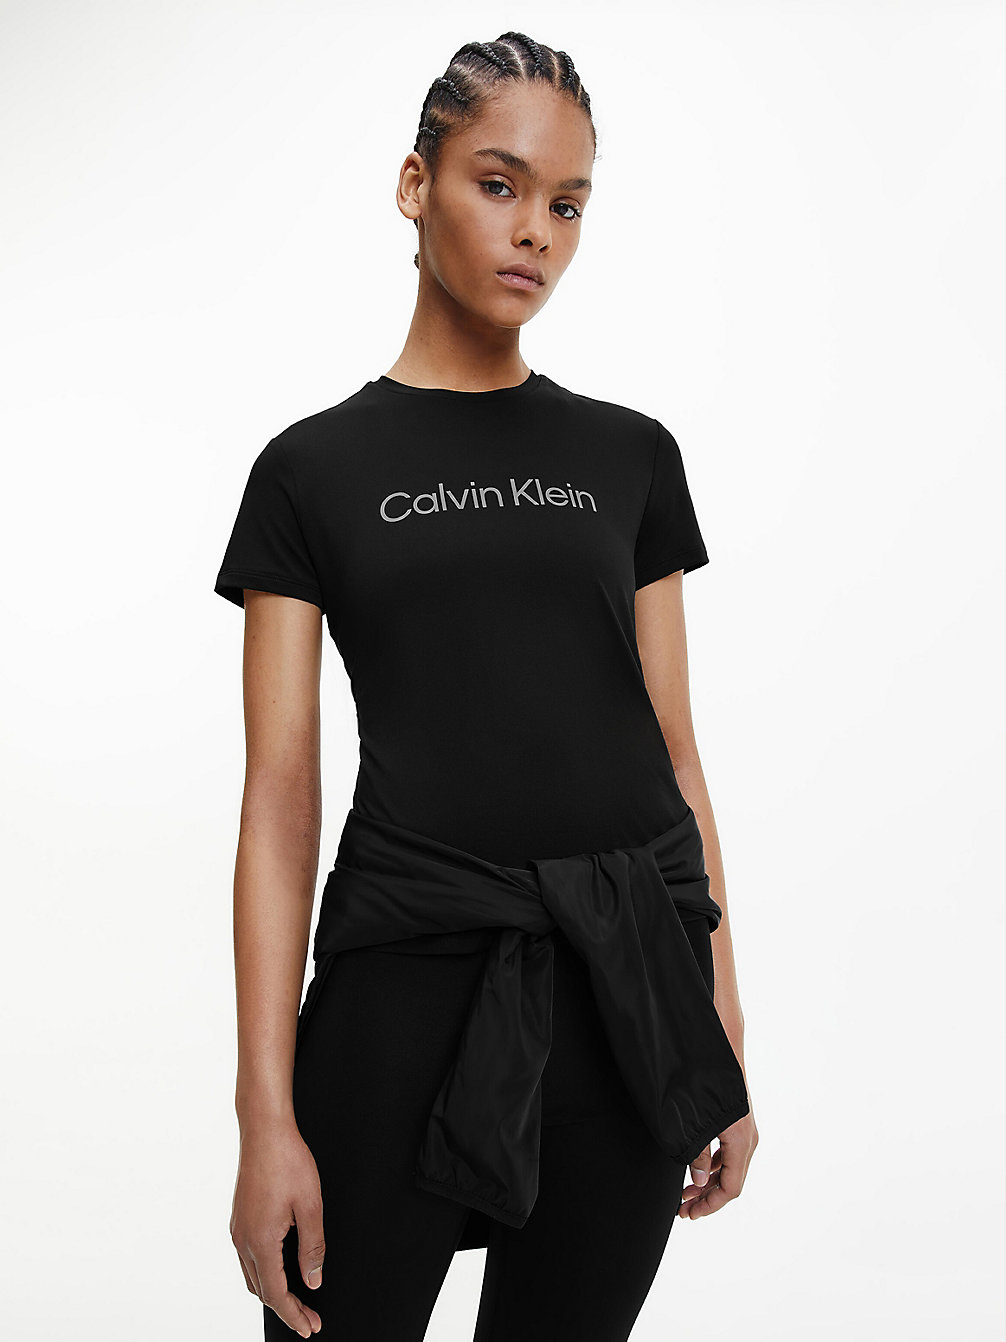 T-Shirt Da Palestra > BLACK BEAUTY > undefined donna > Calvin Klein